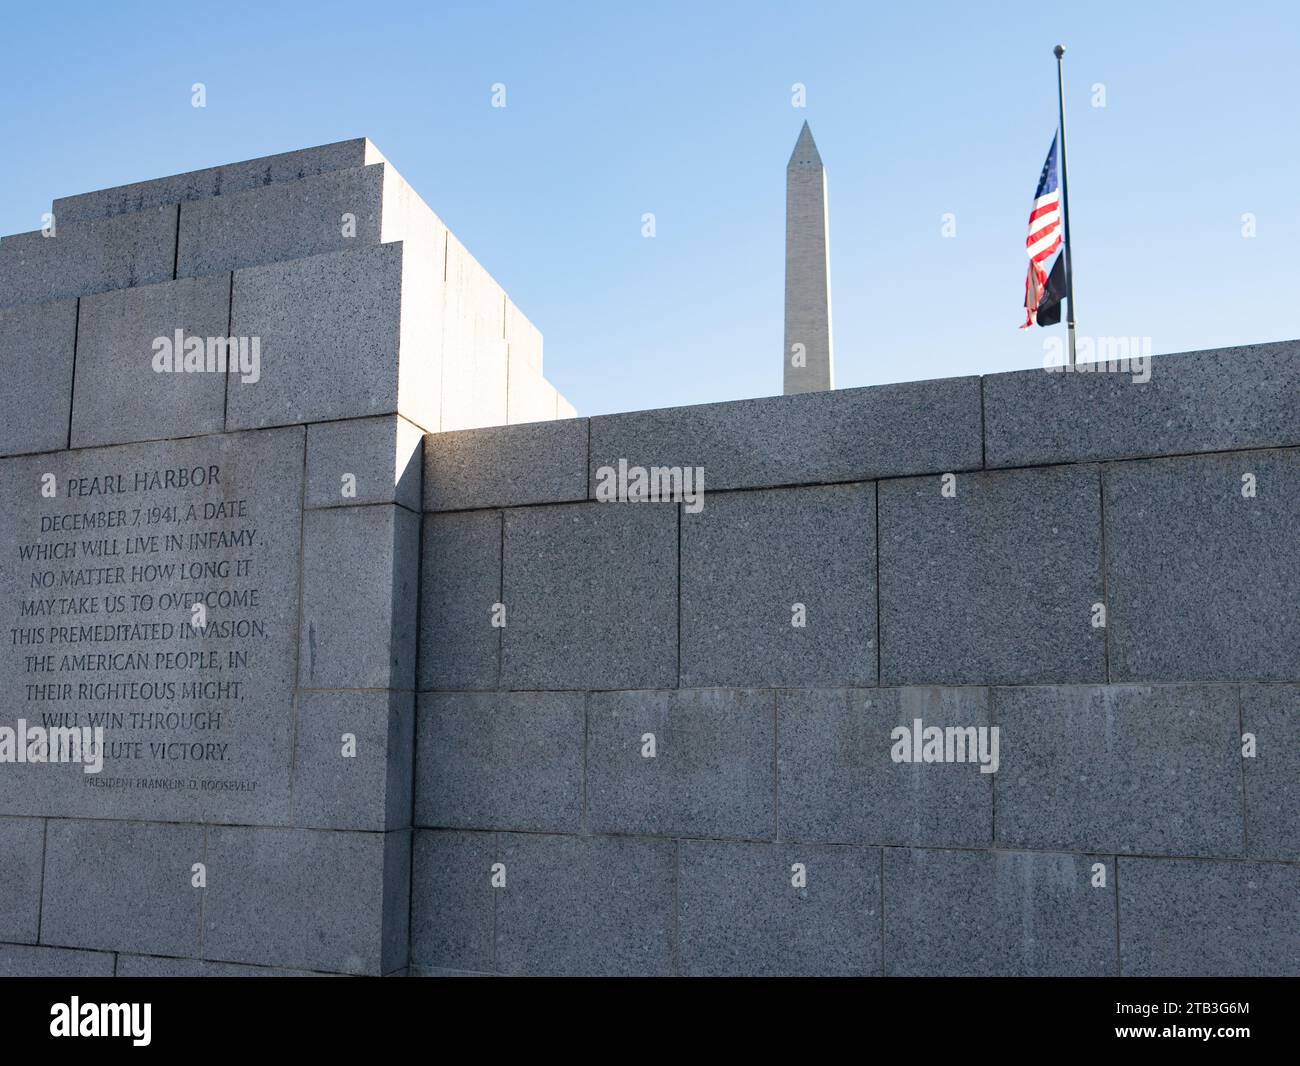 Das World war 2 Memorial, Washington DC für alle Soldaten und diejenigen, die während des Zweiten Weltkriegs in allen Theatern starben, repräsentiert Soldaten aus jedem Staat Stockfoto